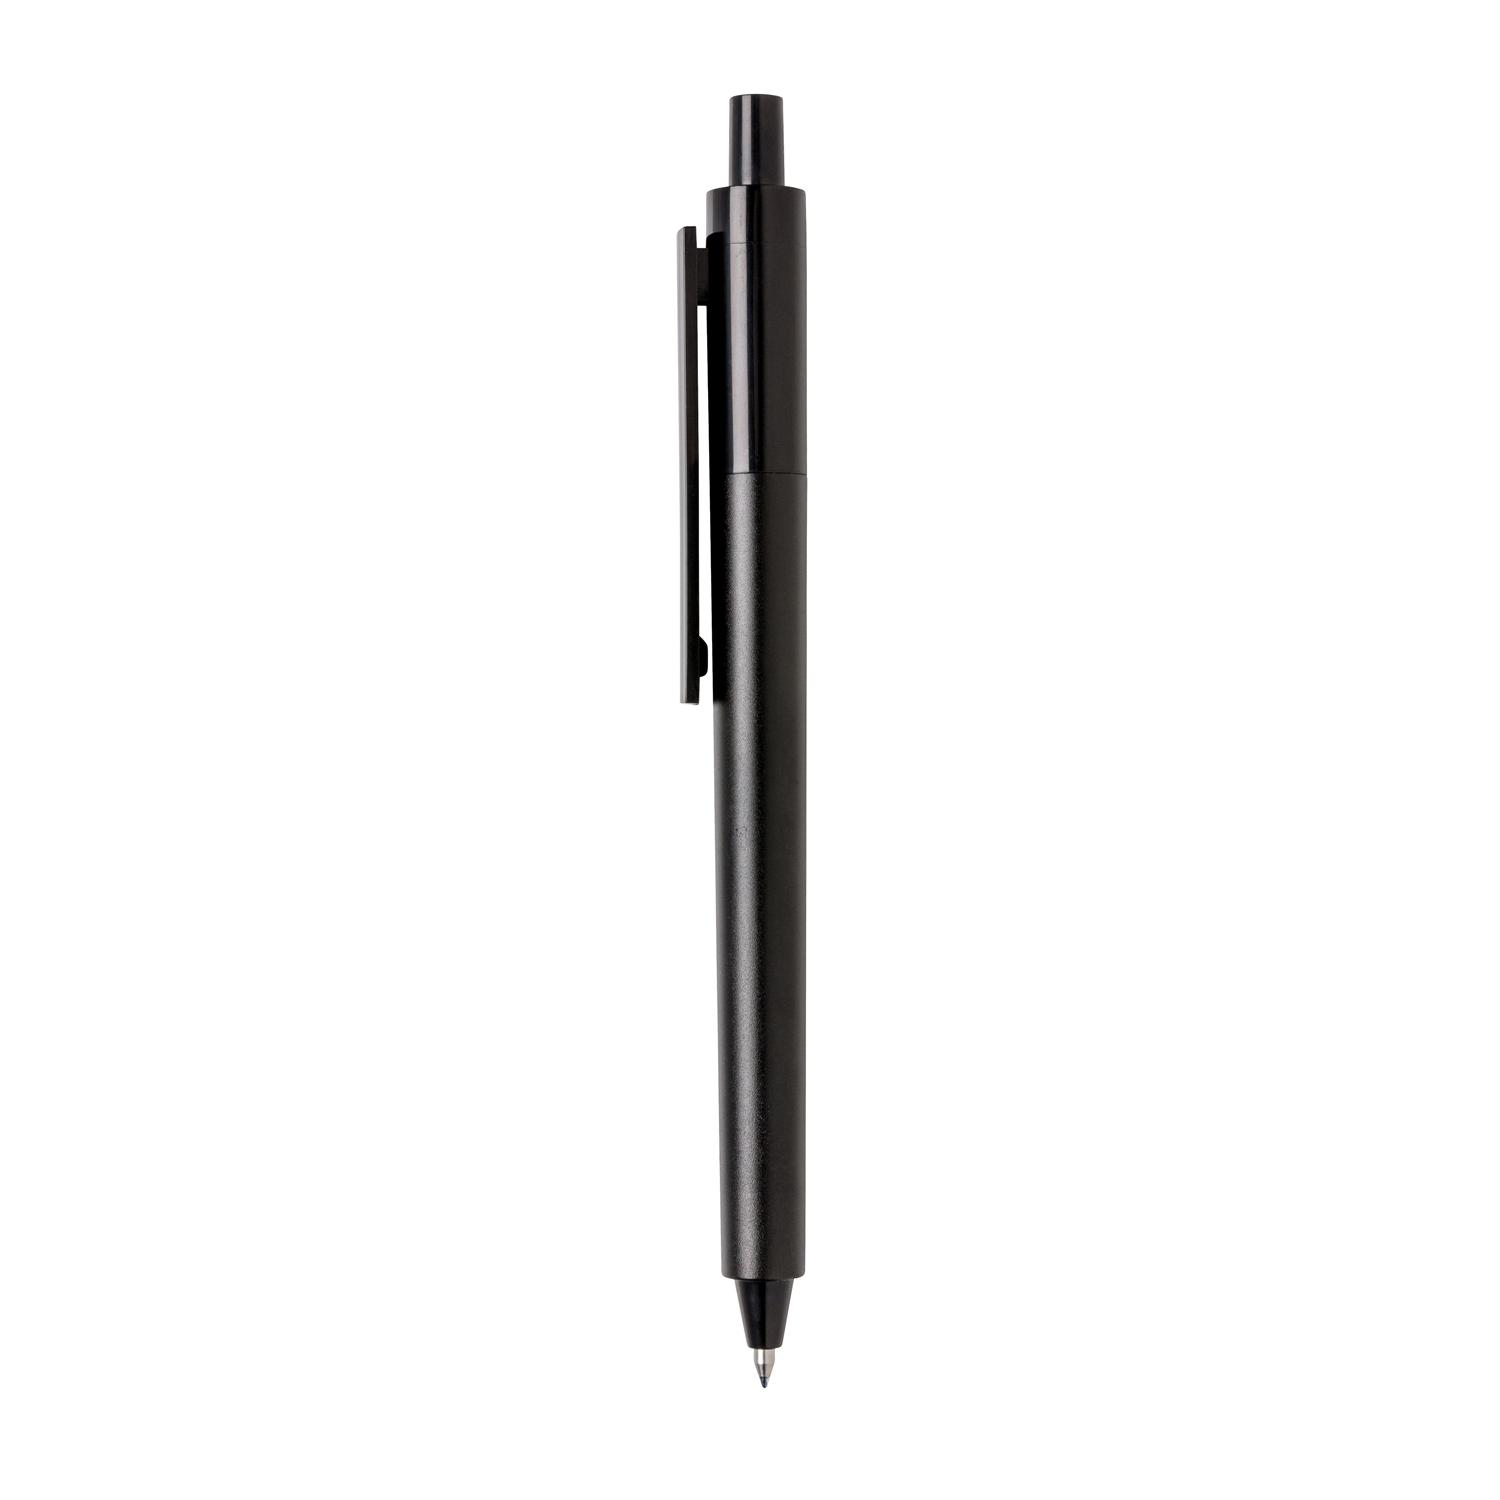 Ручка X4, черный